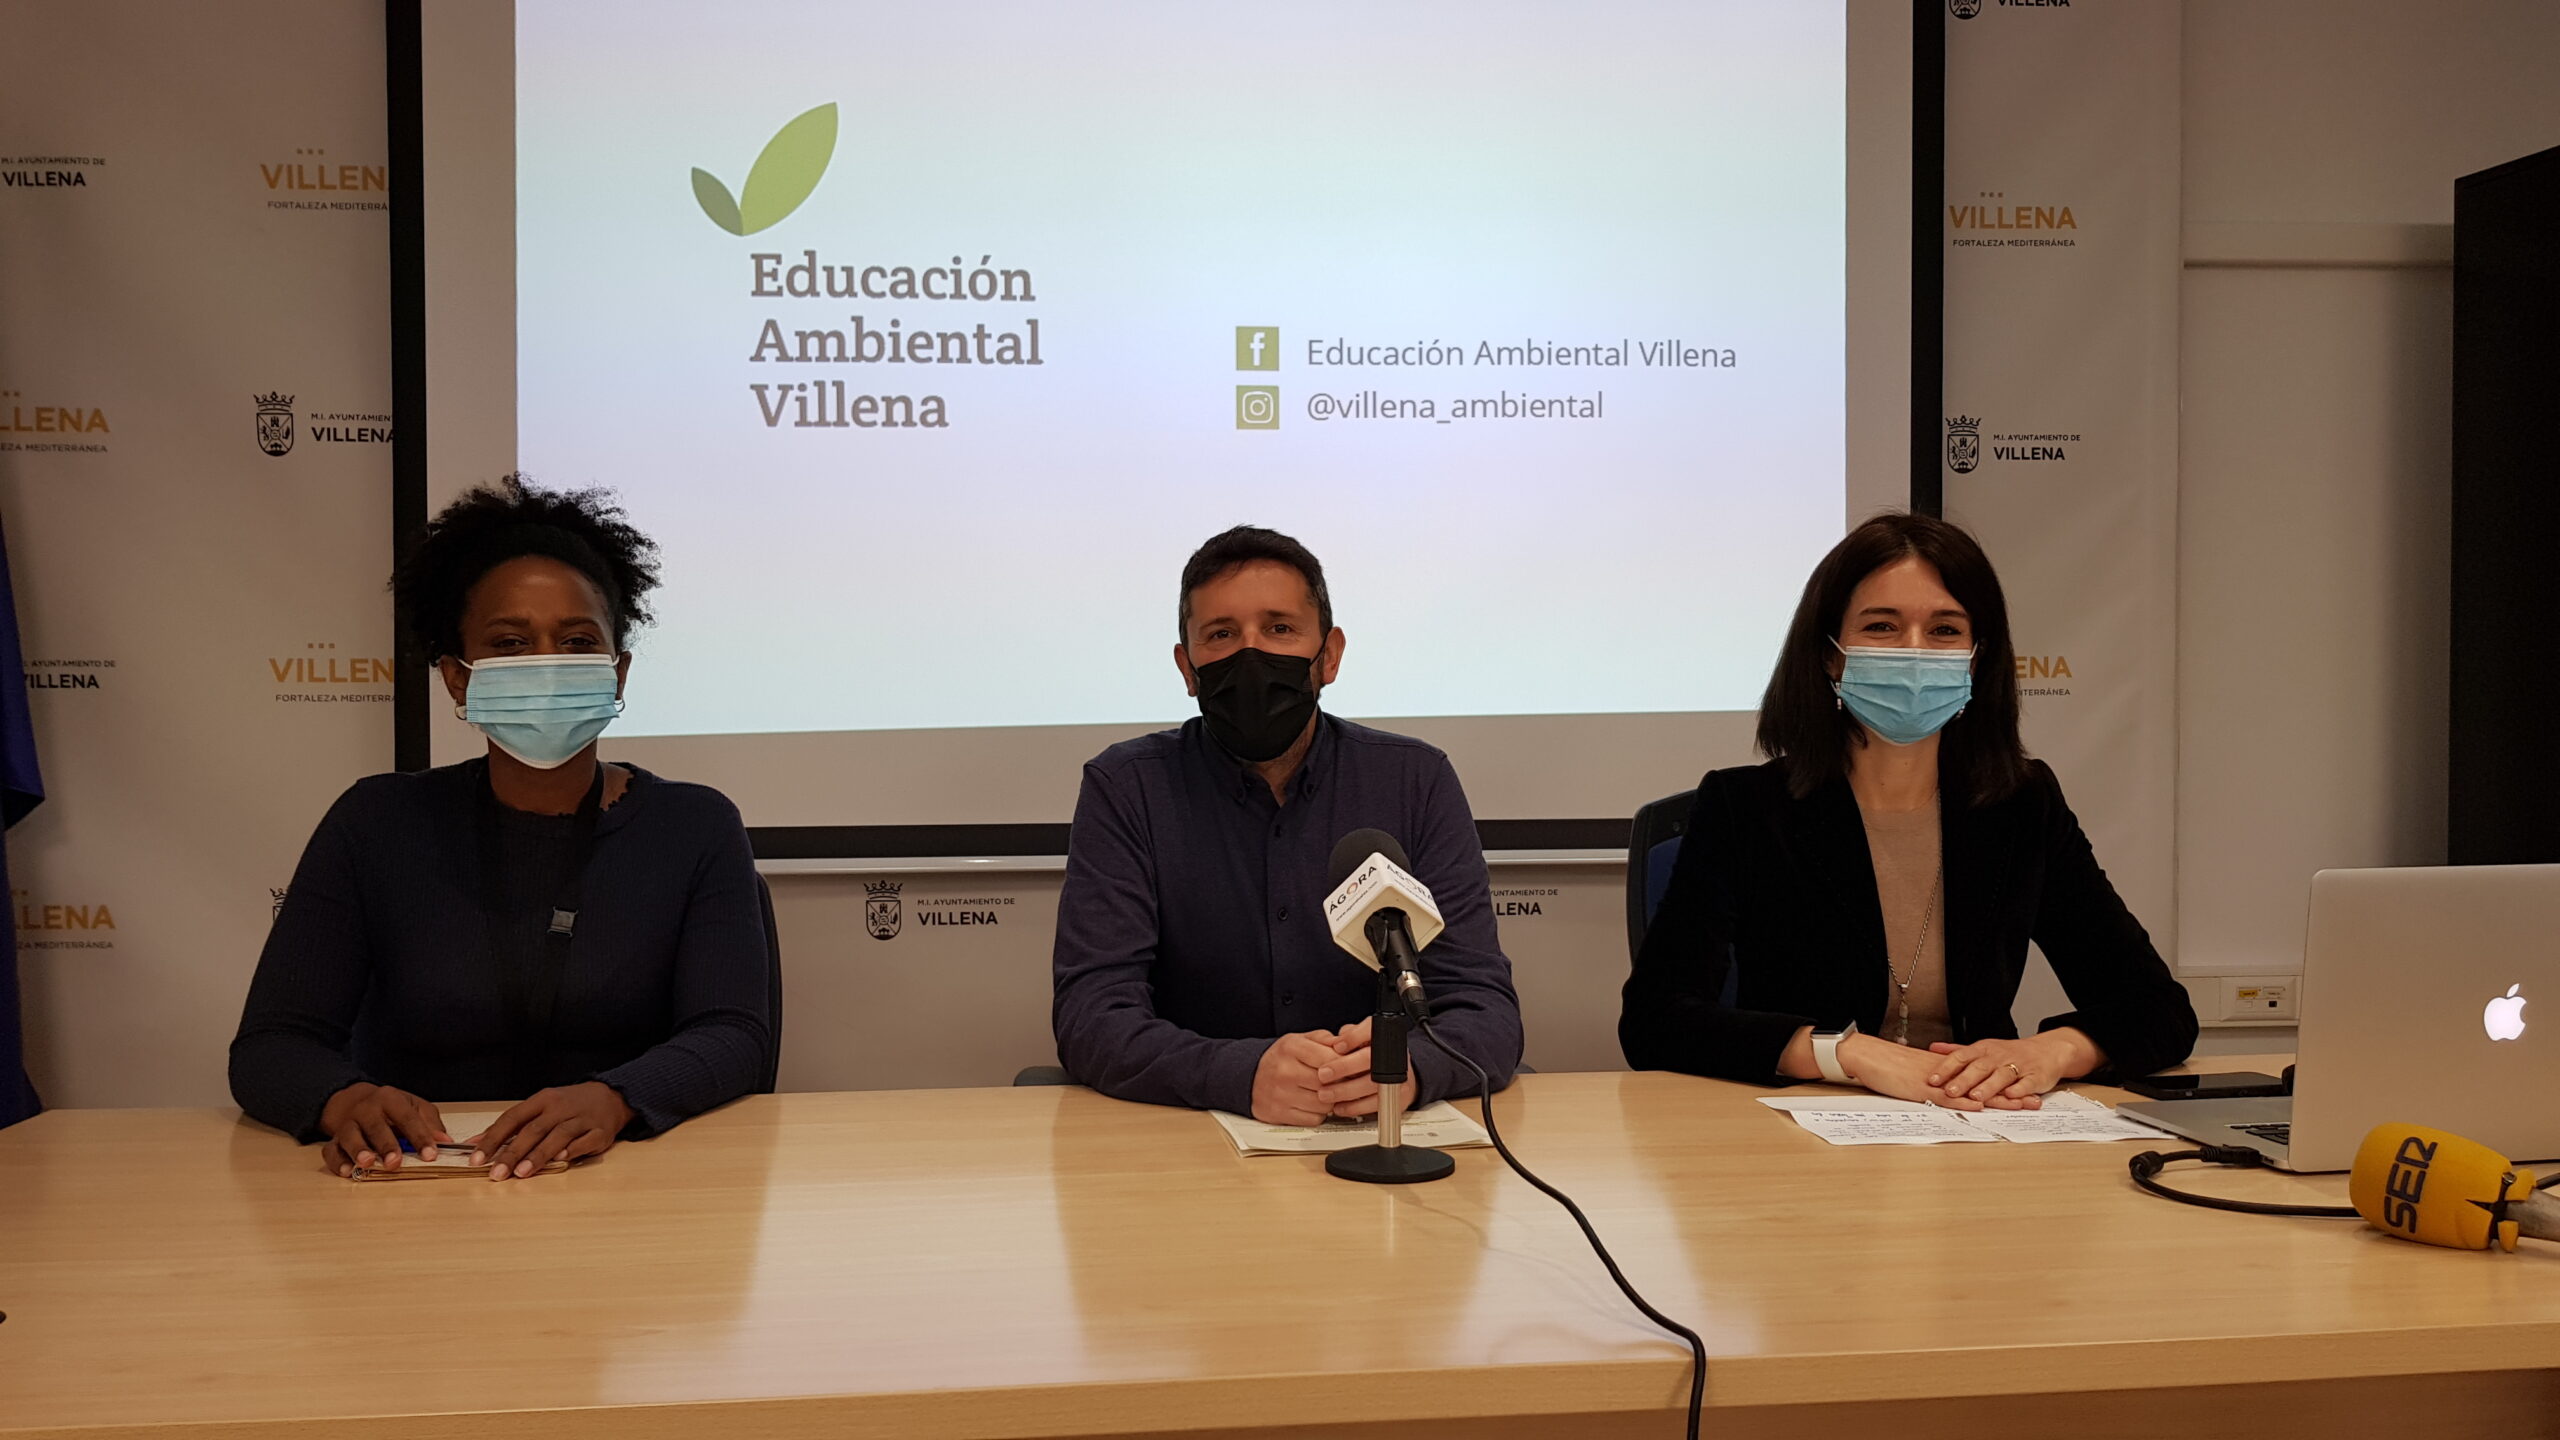 Villena pone en marcha un servicio de educación medio ambiental con campañas de concienciación